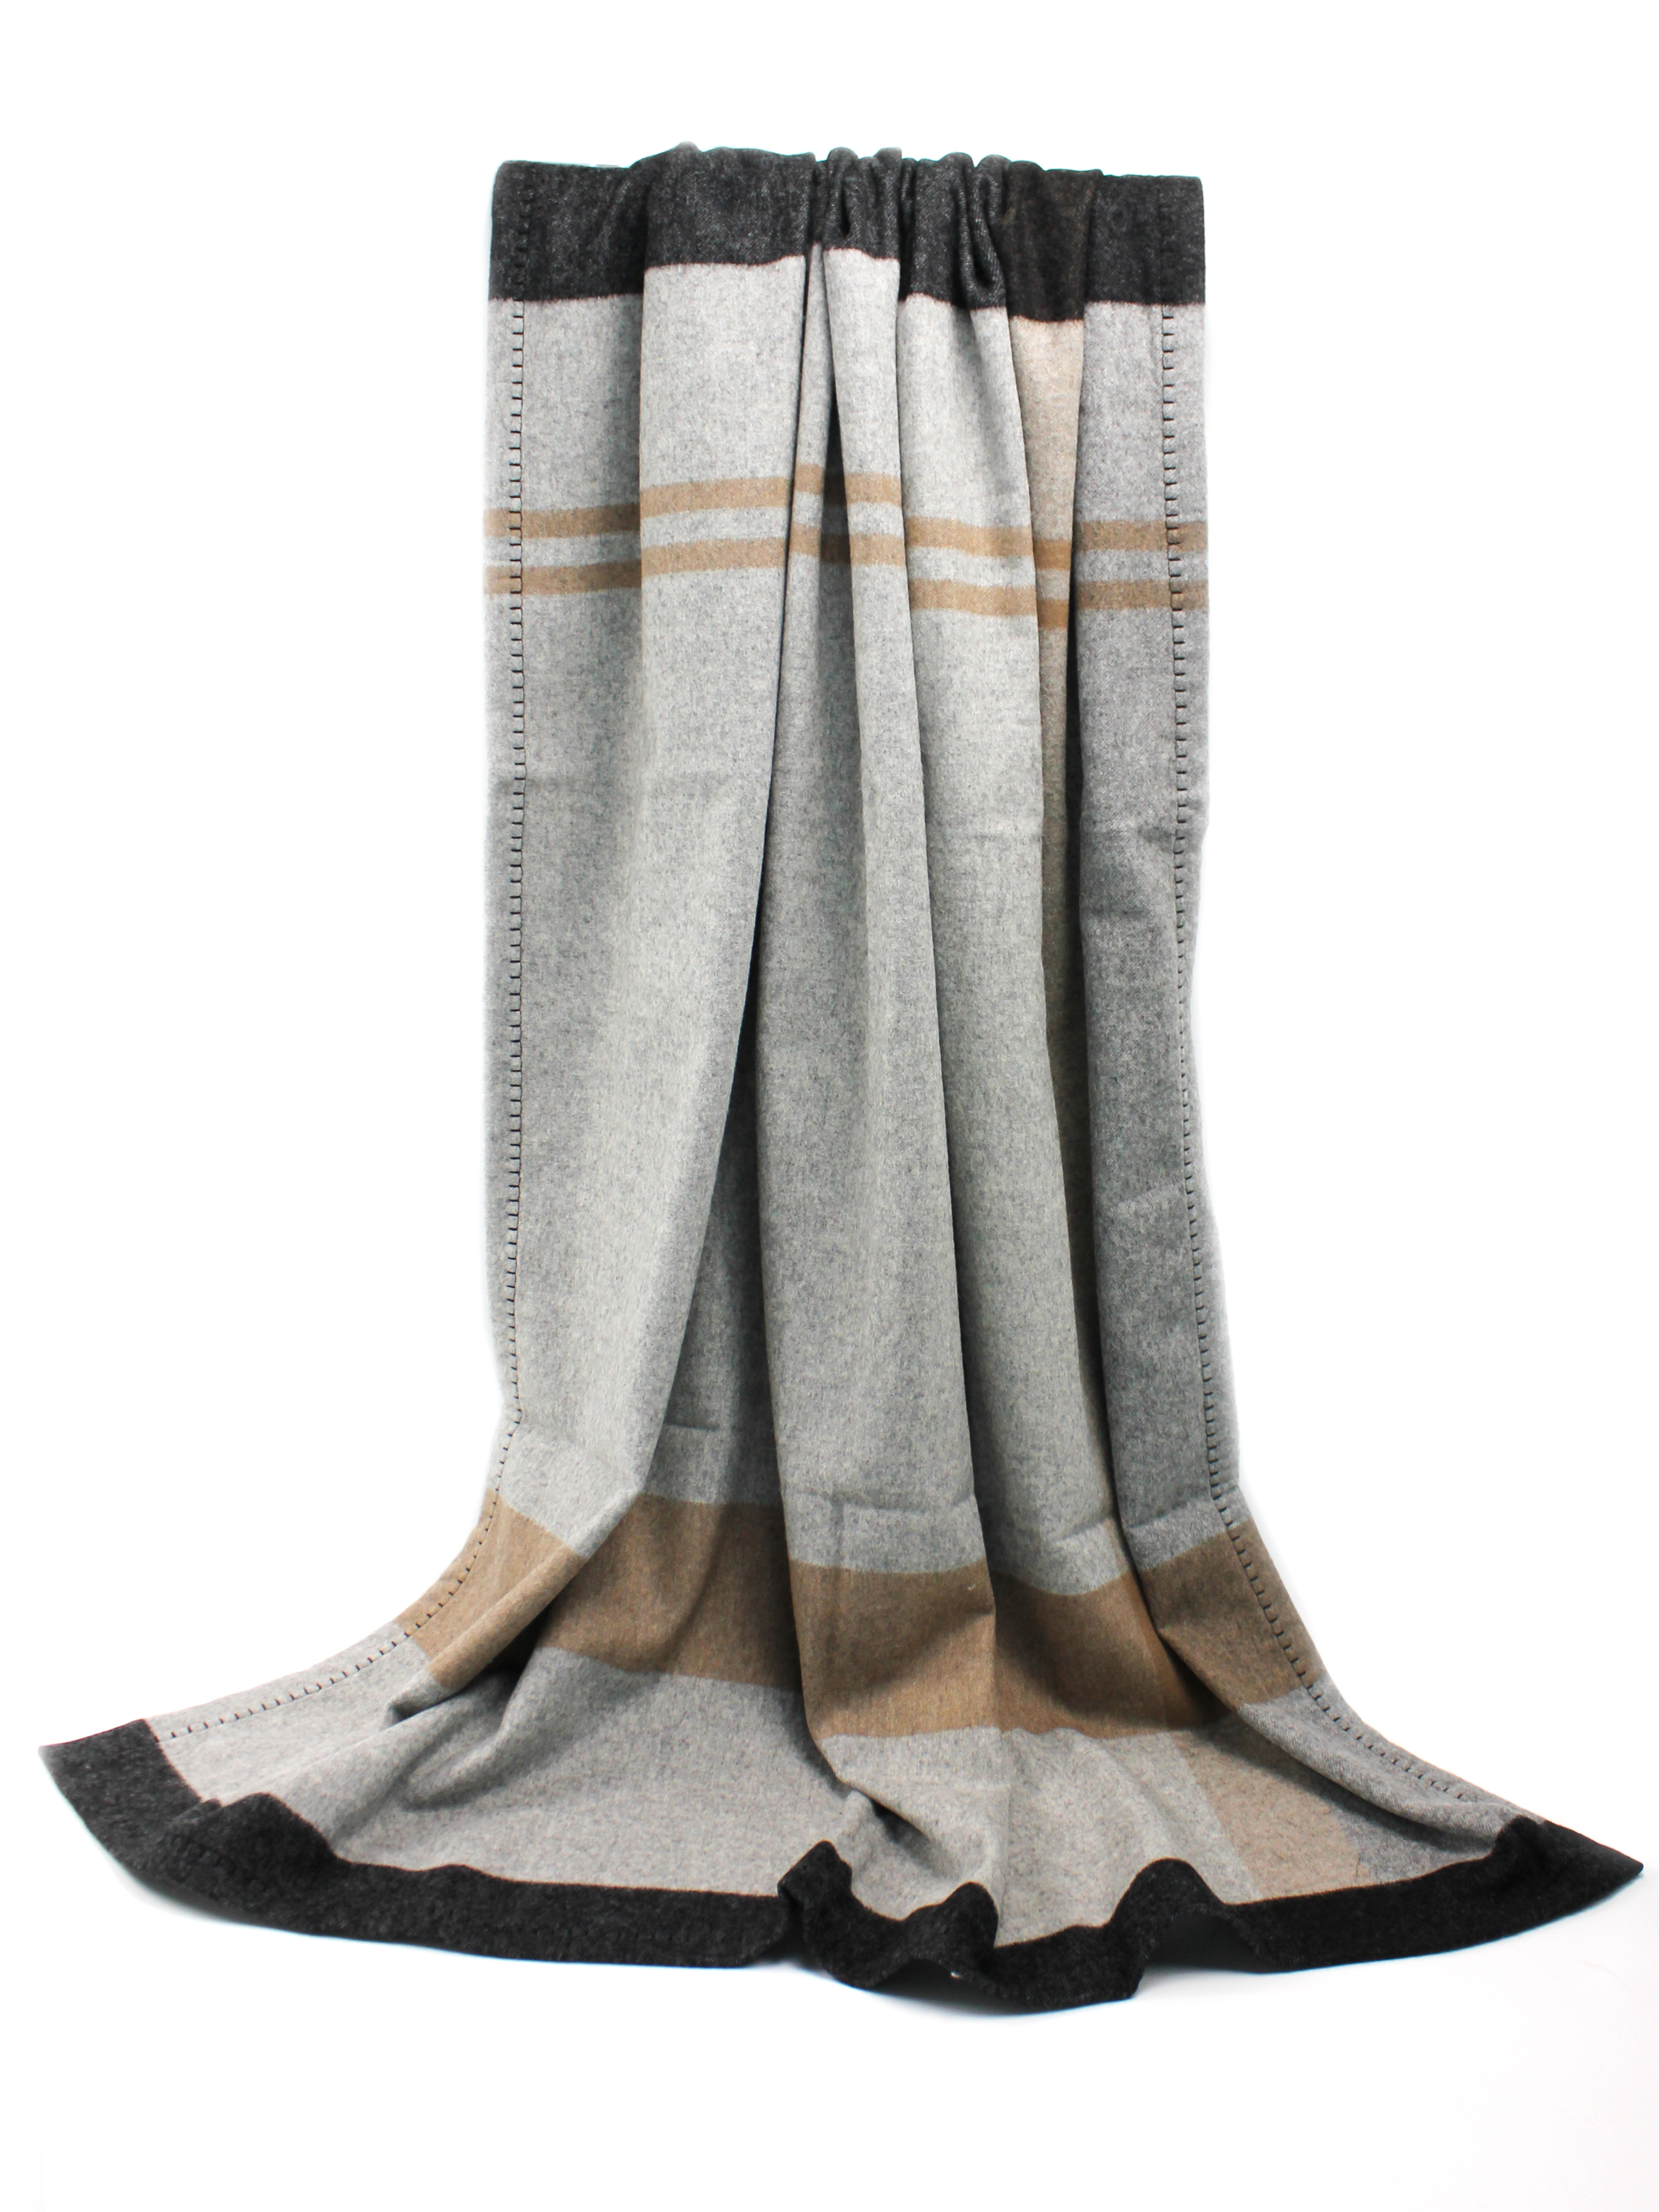 Striped Wool Blanket